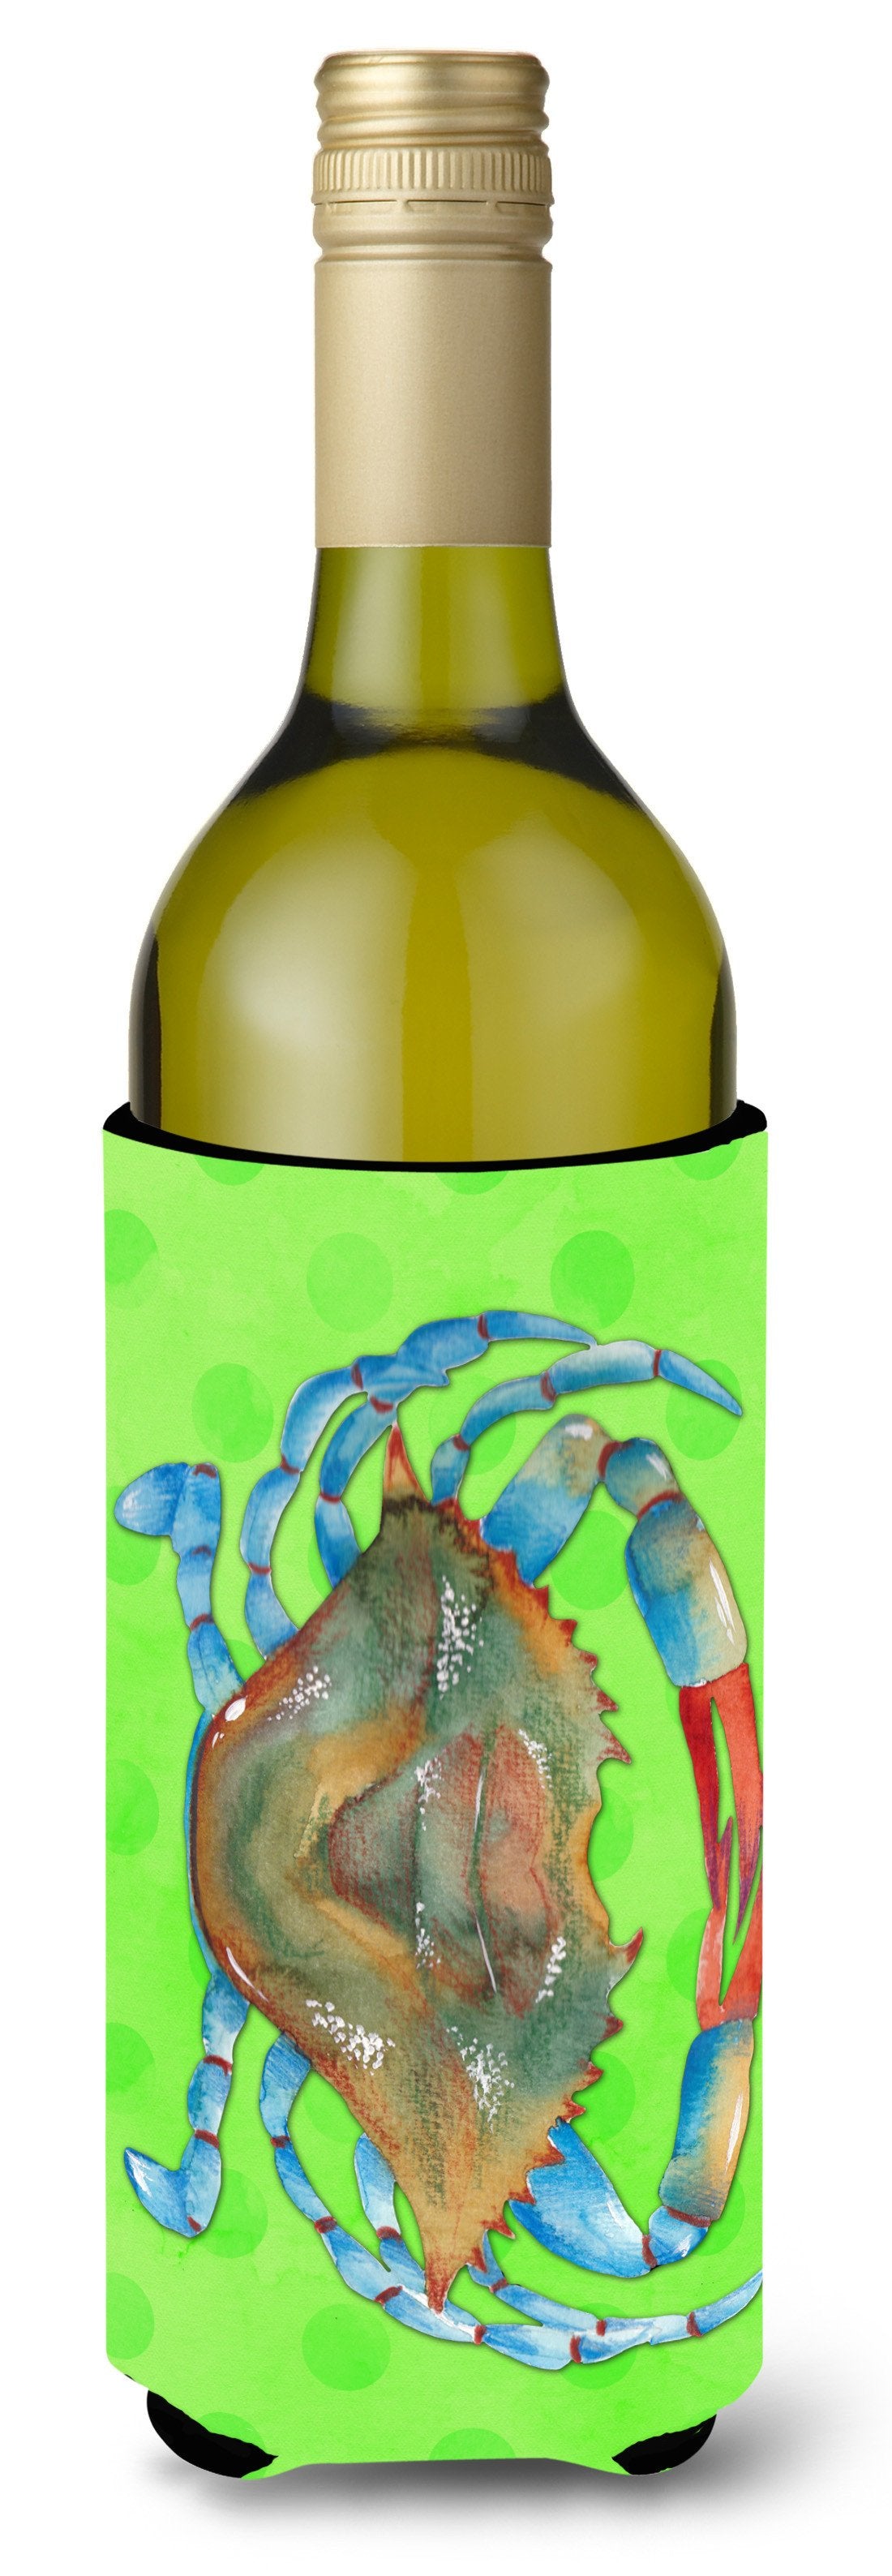 Blue Crab Green Polkadot Wine Bottle Beverge Insulator Hugger BB8245LITERK by Caroline's Treasures